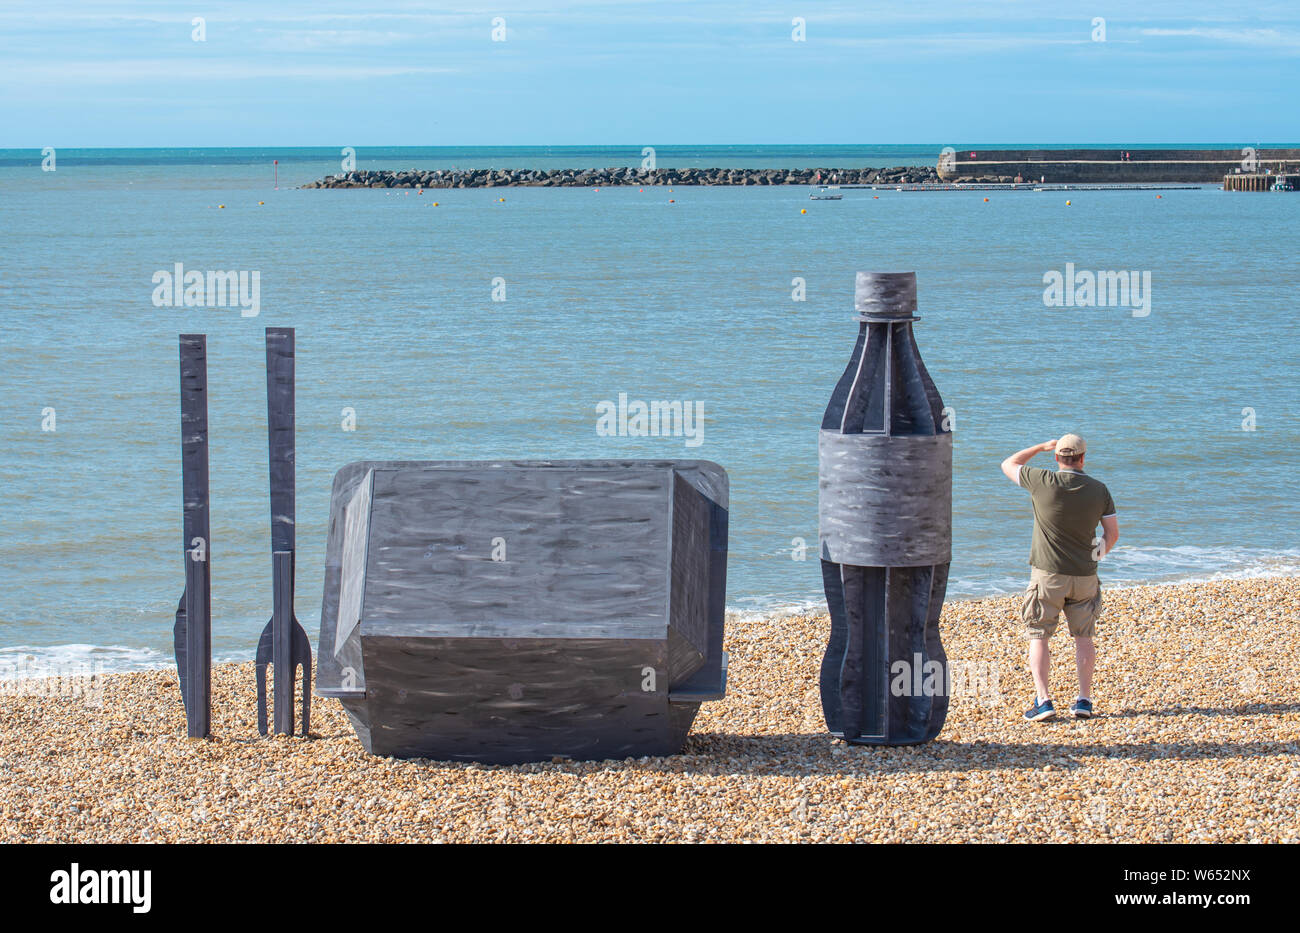 Lyme Regis, dans le Dorset, UK. Le 31 juillet 2019. Météo France : un homme admire la vue sur une litière géante sculpture d'emballage à emporter qui a été érigée sur la pittoresque plage de la station balnéaire de Lyme Regis. Composé d'un plastique d'une hauteur de 8 pieds, couverts de bouteilles de boissons mesurant 6 pieds de haut et une puce/burger fort de 4x4 pied les sculptures de promouvoir les efforts de la litière de côte et mer et partenaires à la promotion de choix écologiques. Il est à espérer que l'installation temporaire par Raisey Jack concepteur architectural va encourager les gens à prendre leur litière maison. Credit : Banque D'Images